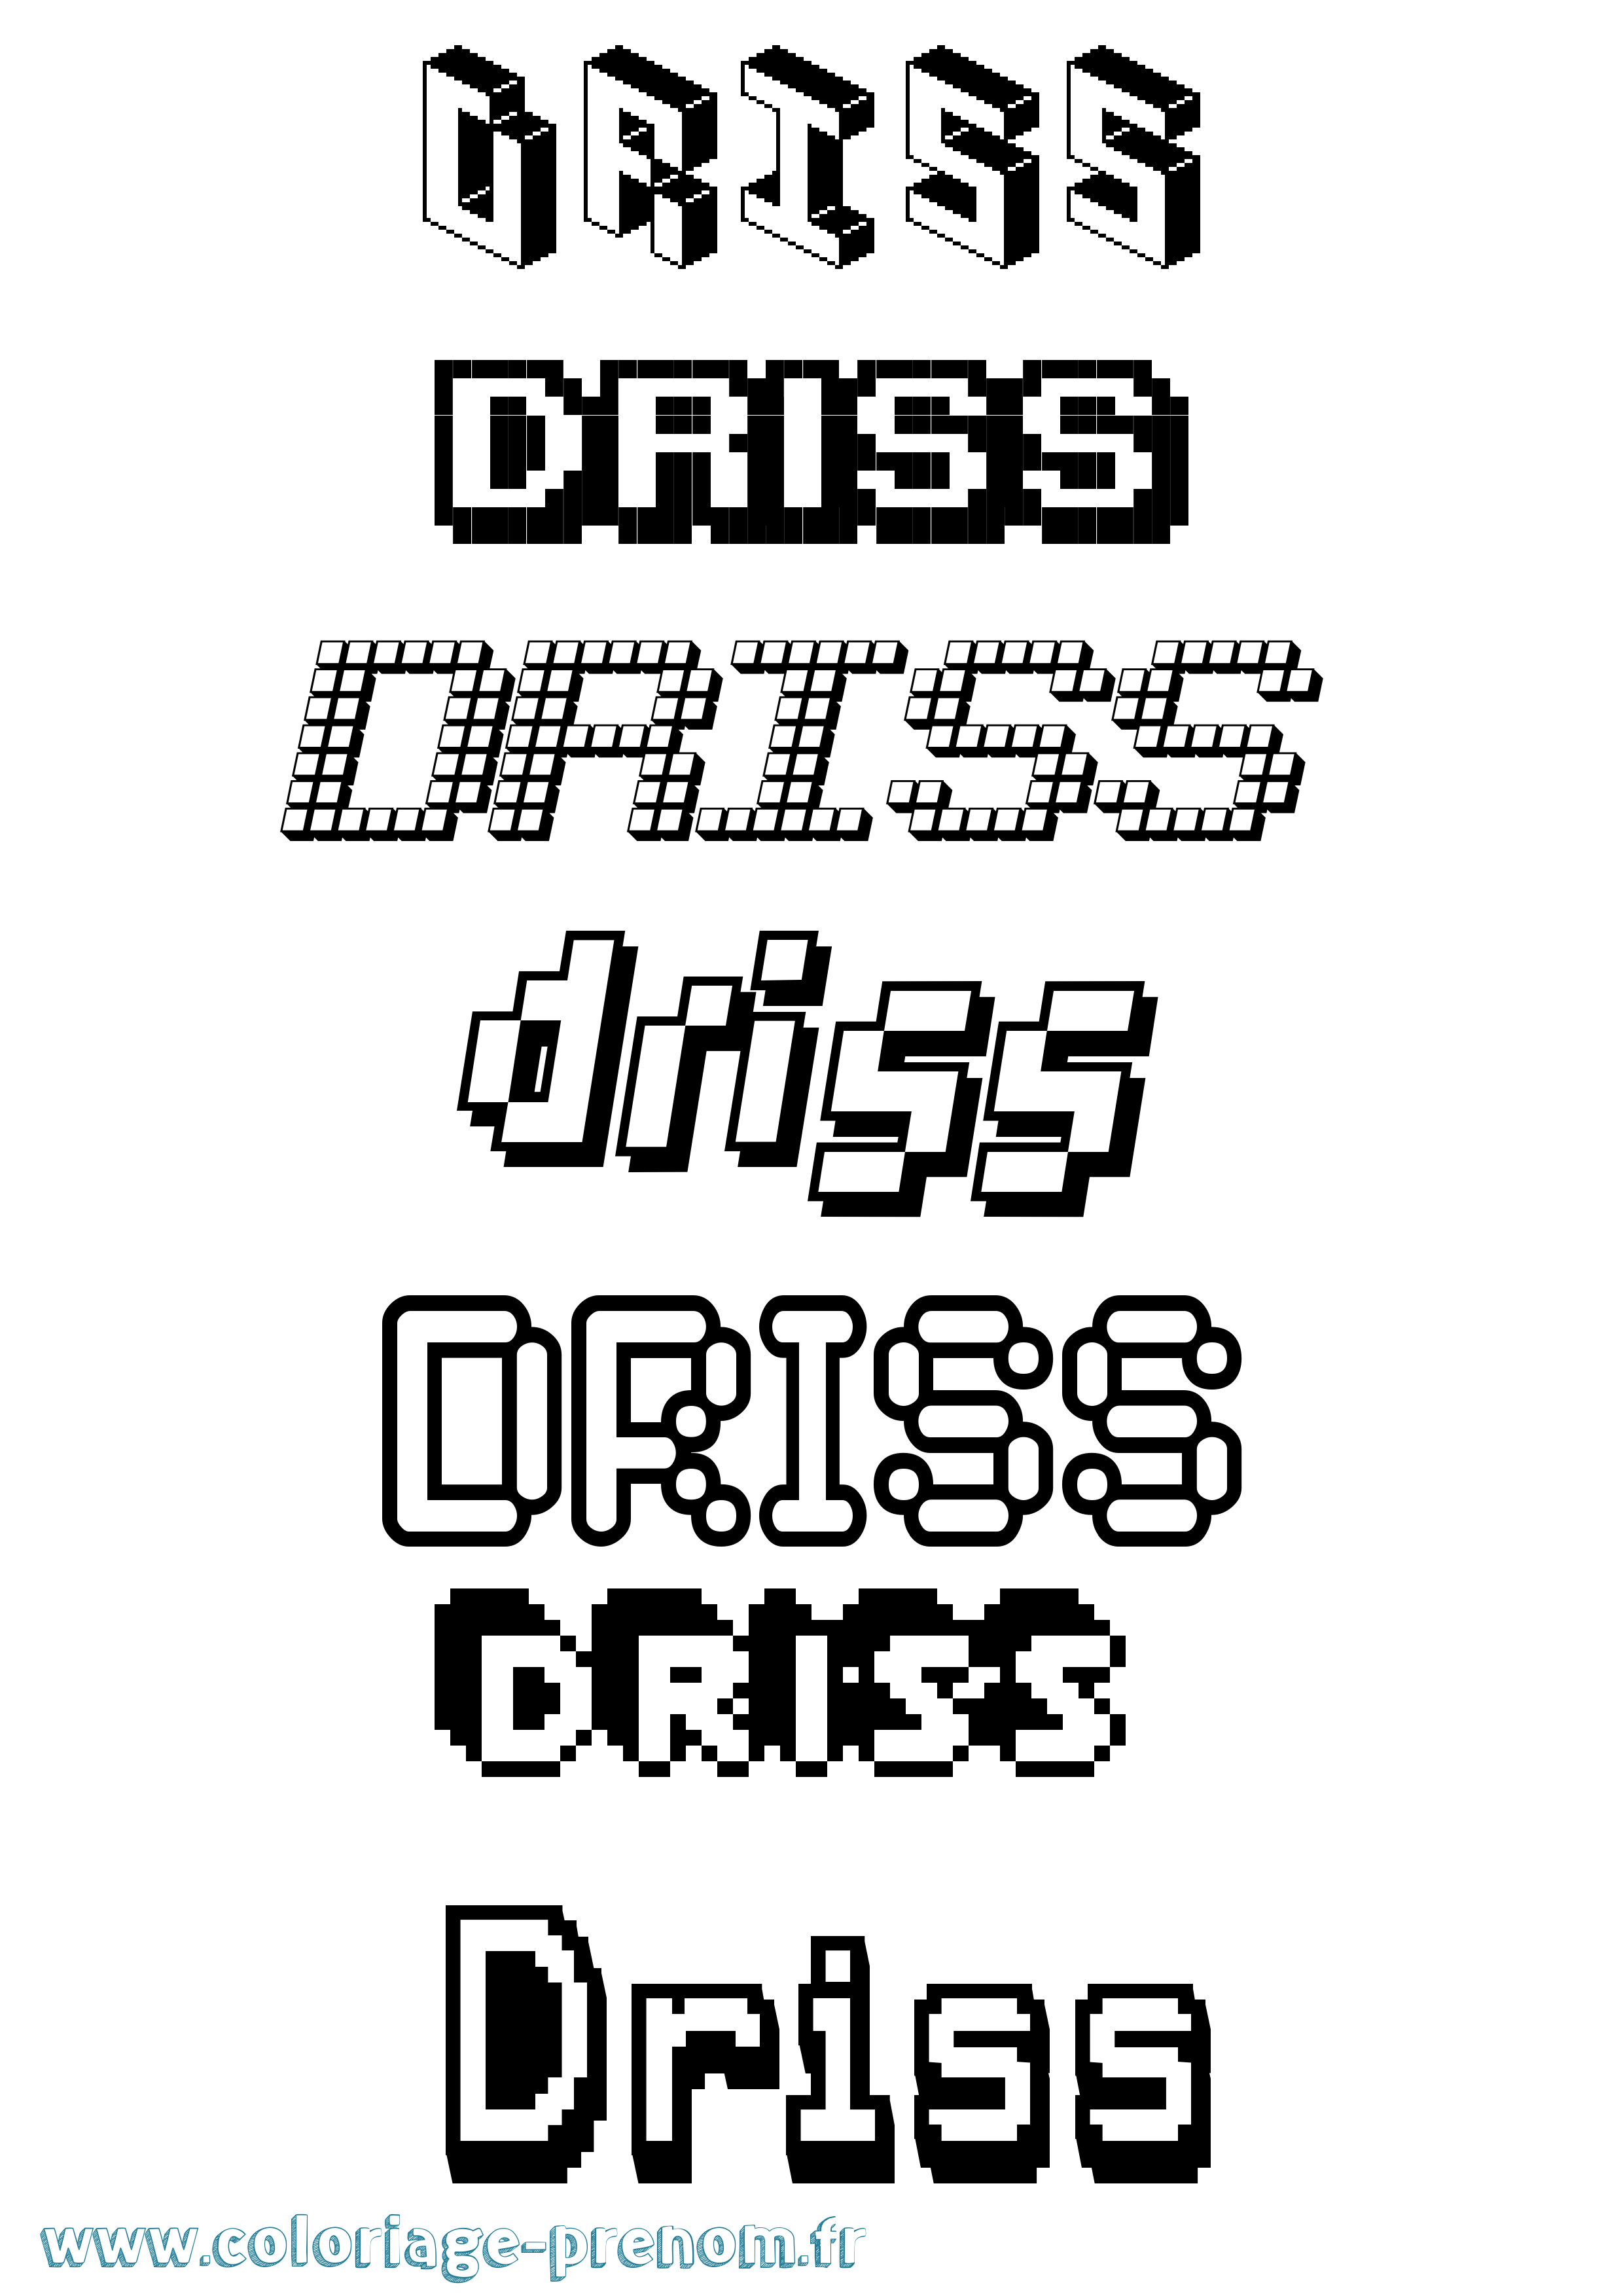 Coloriage prénom Driss Pixel